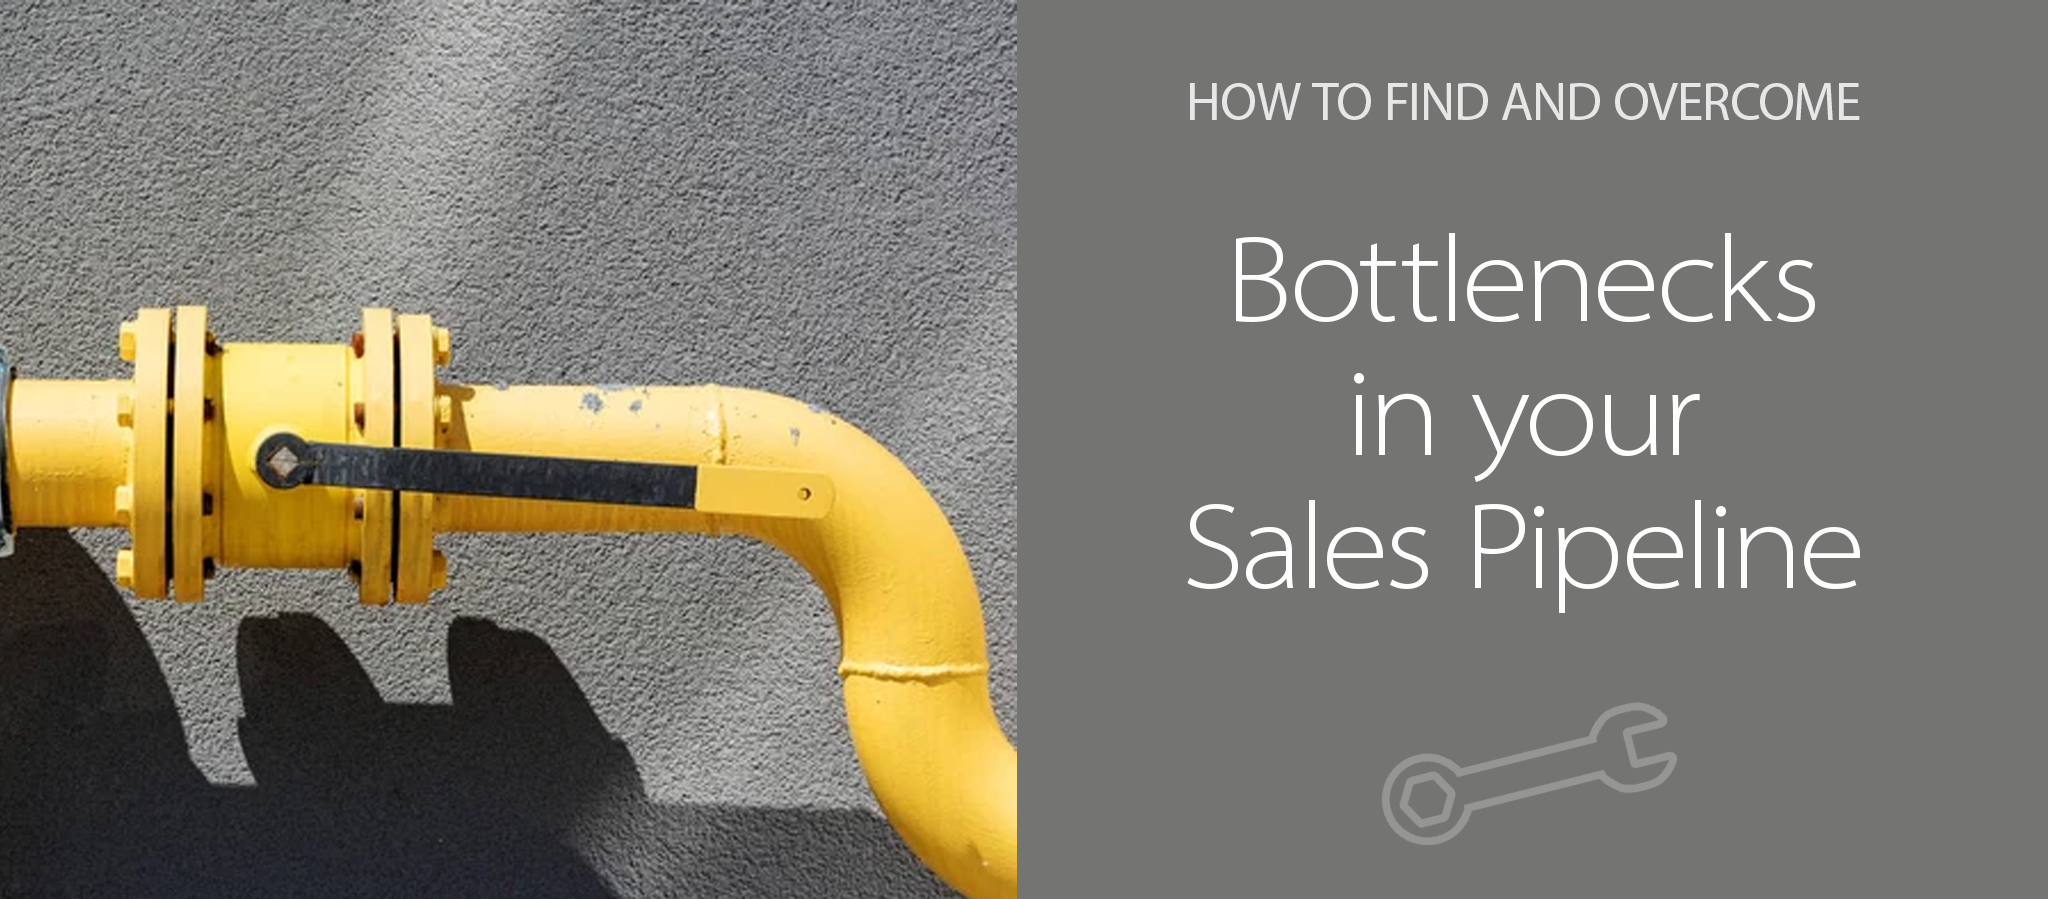 Bottlenecks in your Sales Pipeline